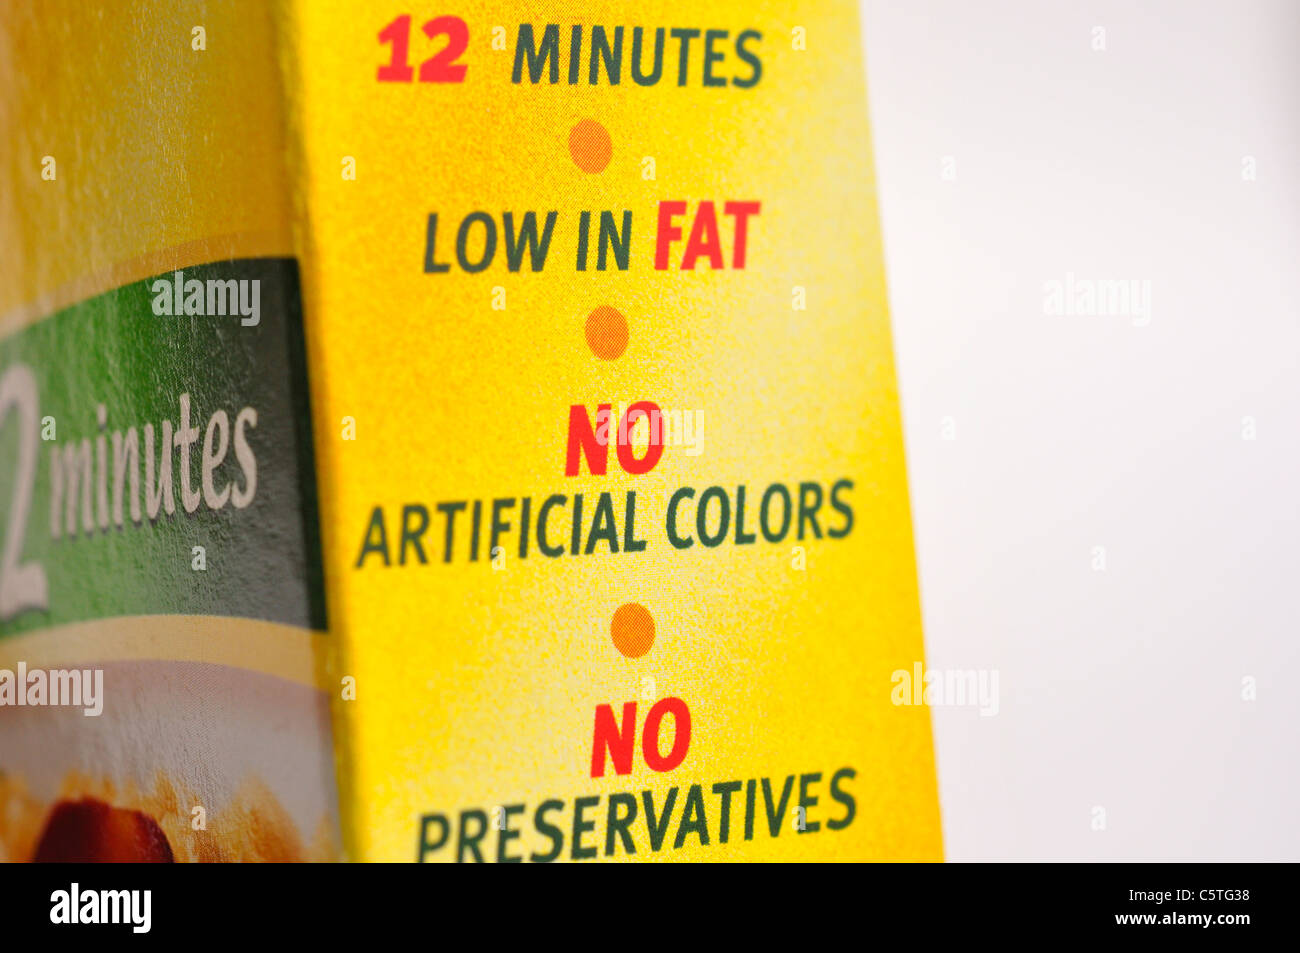 Keine künstlichen Farbstoffe, keine Konservierungsstoffe, Arm an Fetten - auf Lebensmittel-Paket Stockfoto